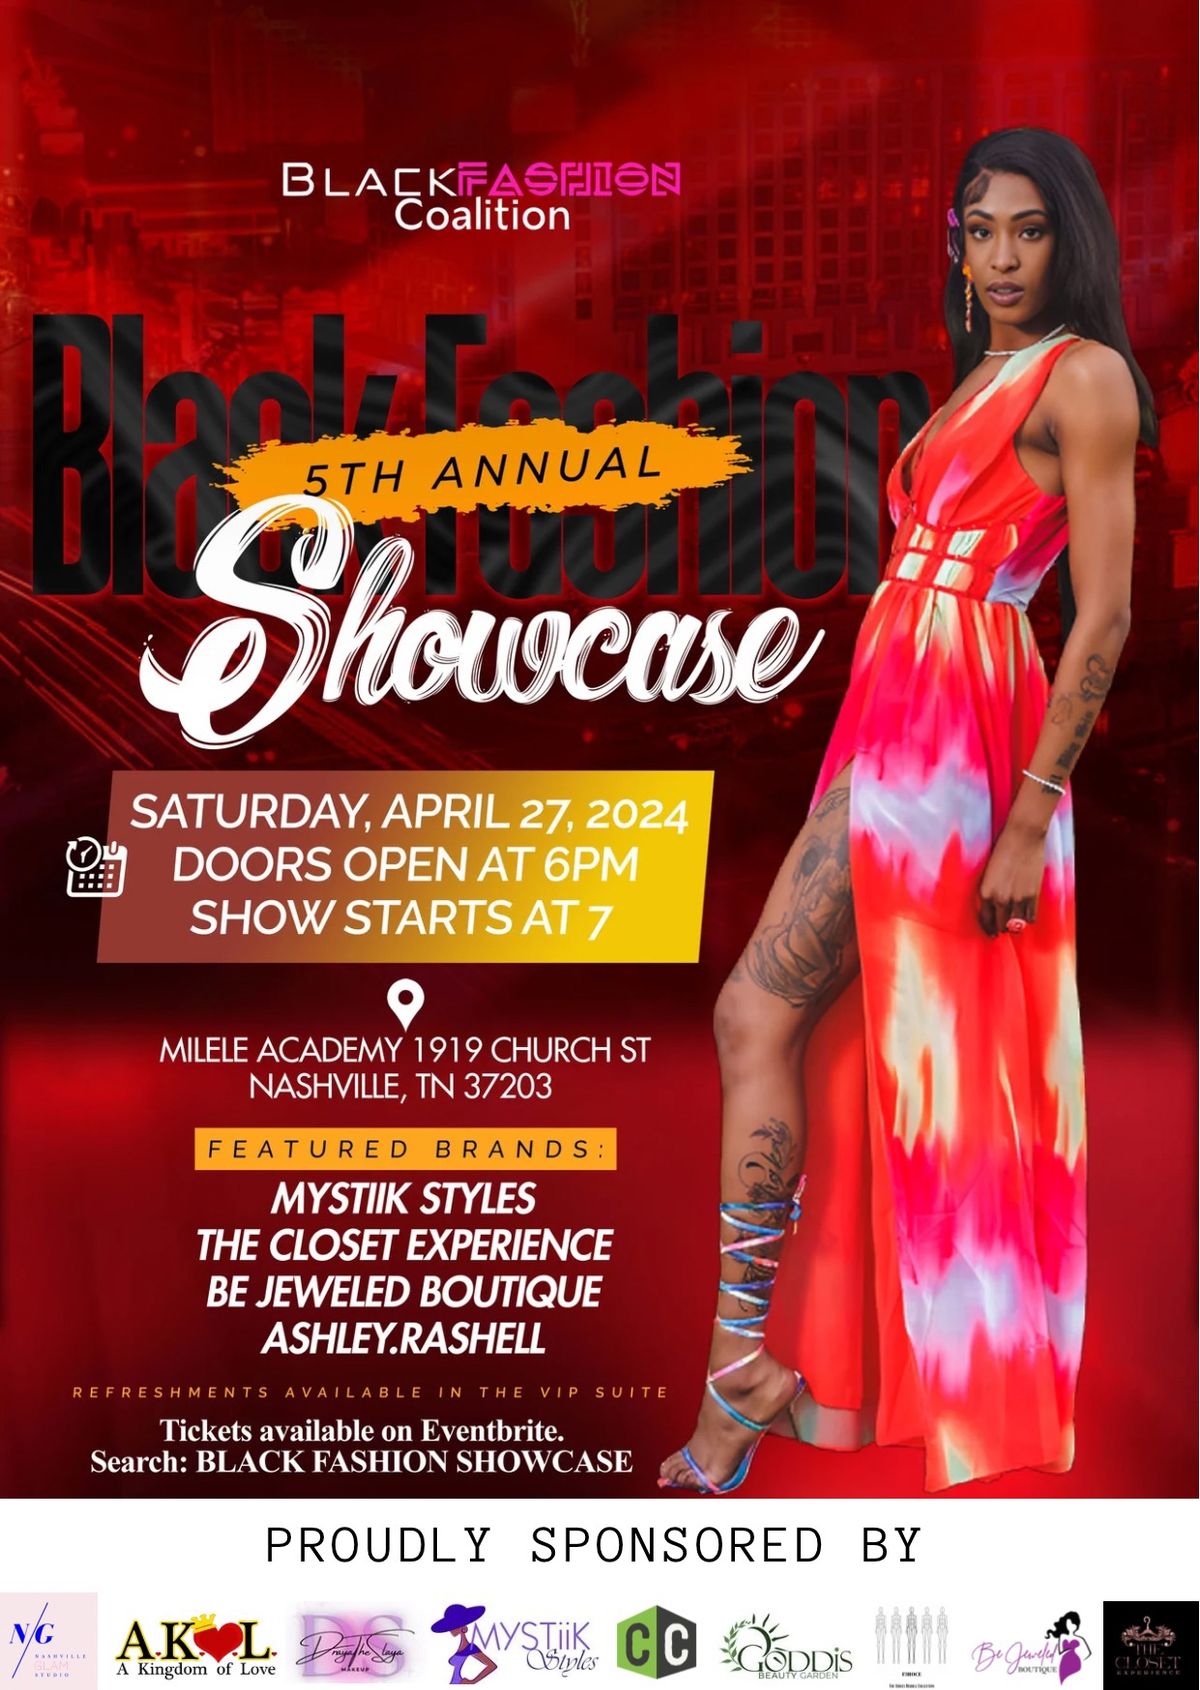 5th Annual Black Fashion Showcase